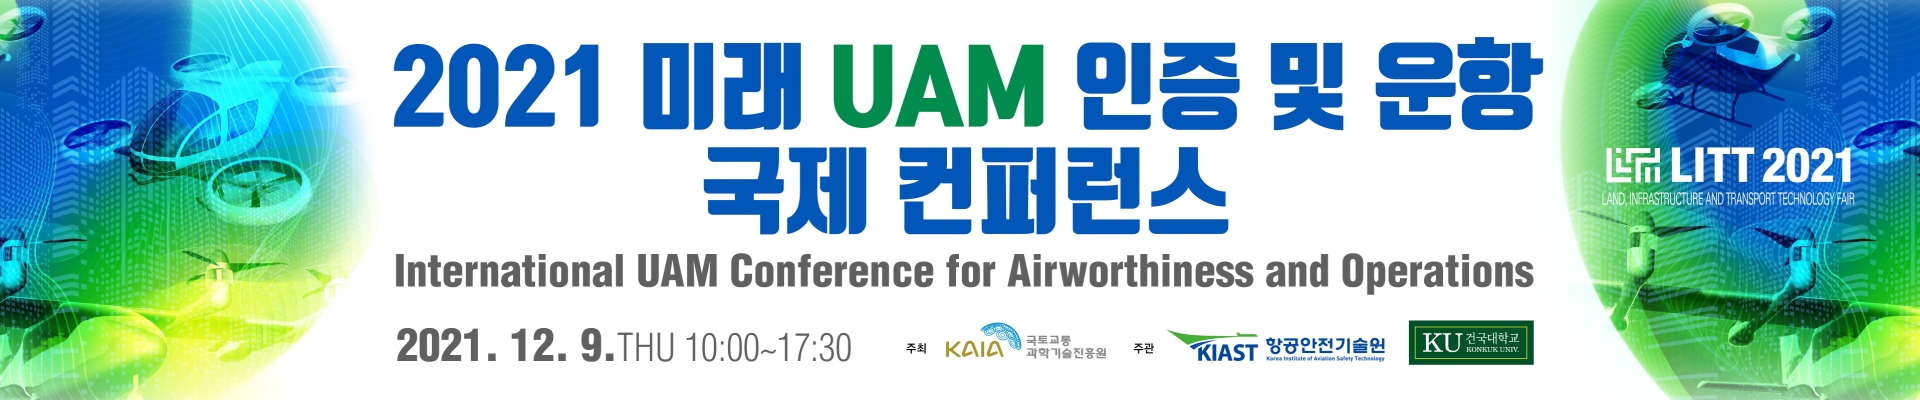 2021 미래 UAM 인증 및 운항 국제 컨퍼런스